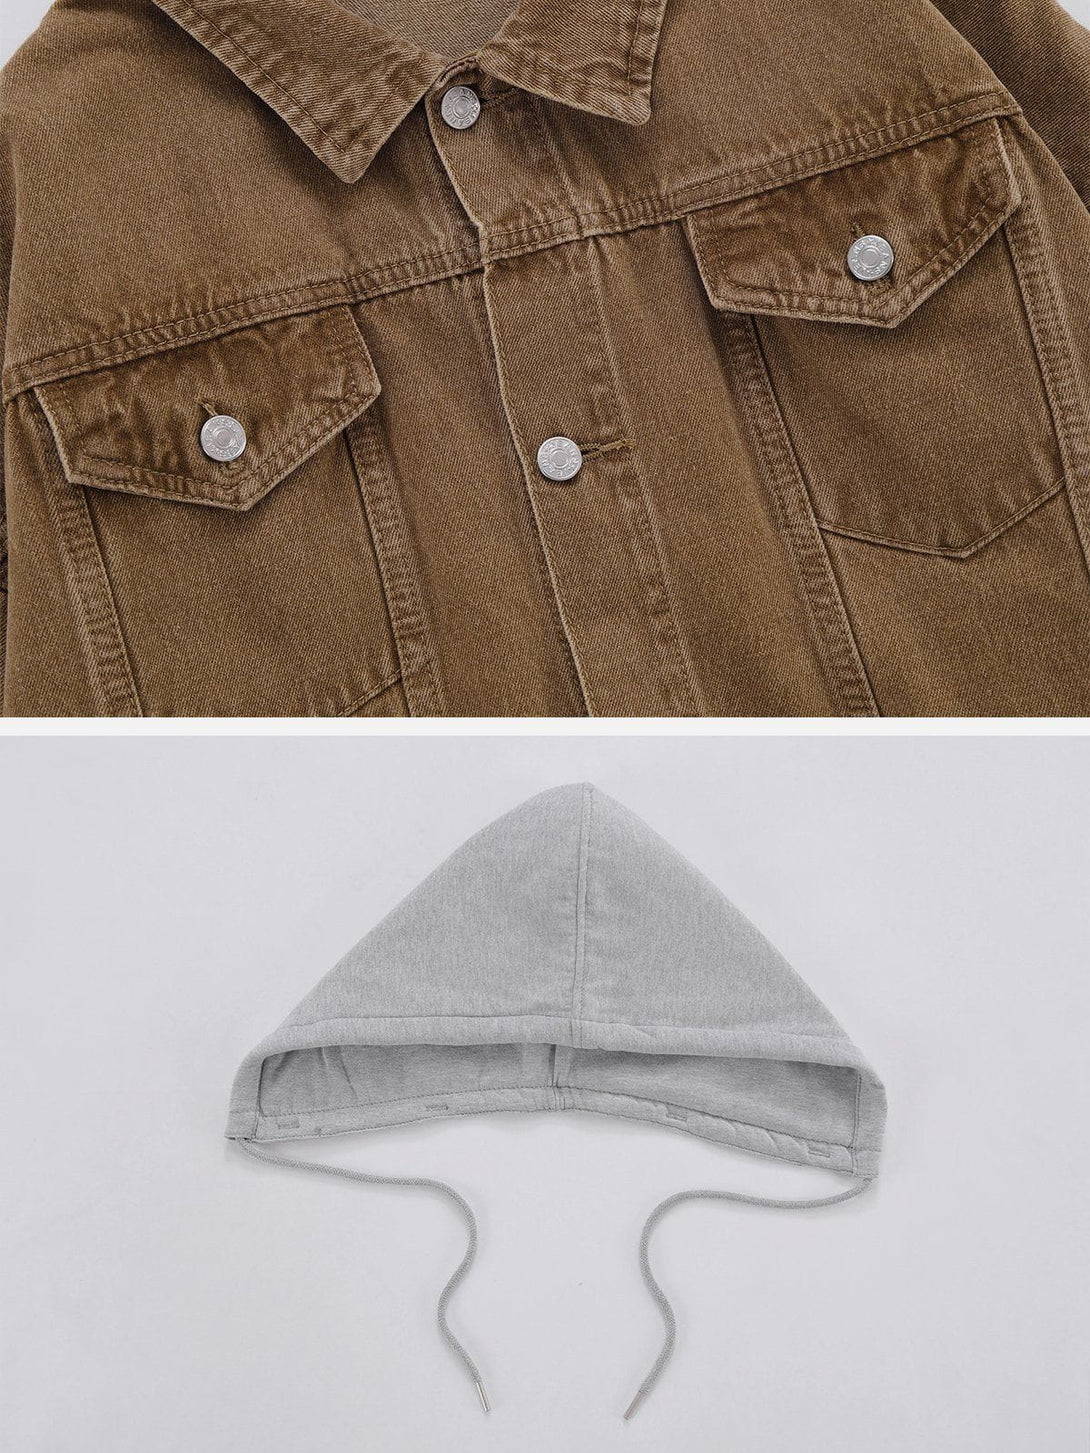 Majesda® - Detachable Hood Solid Denim Jacket outfit ideas, streetwear fashion - majesda.com